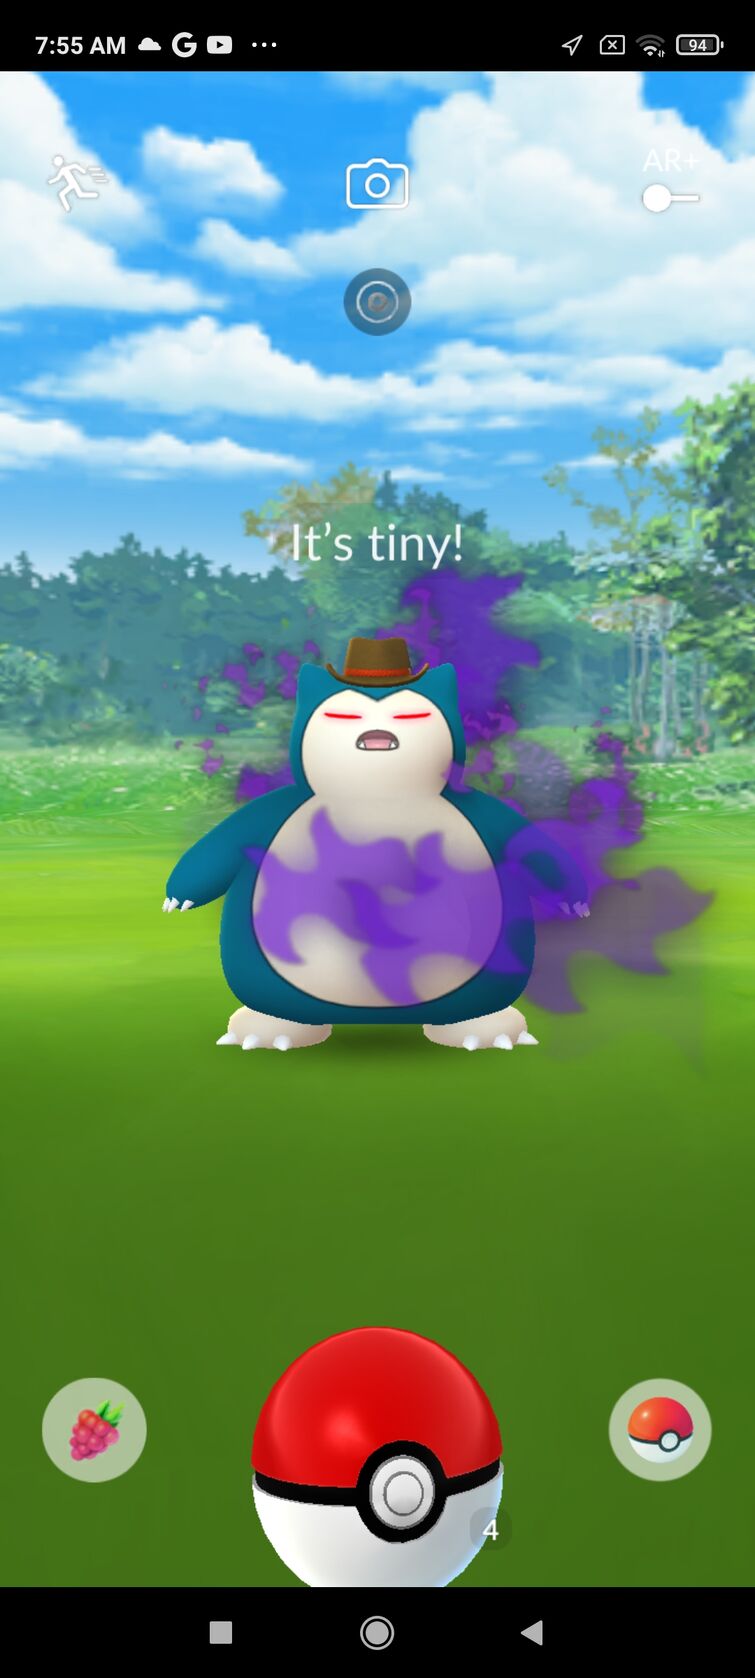 How to get Shiny Zorua in Pokémon GO